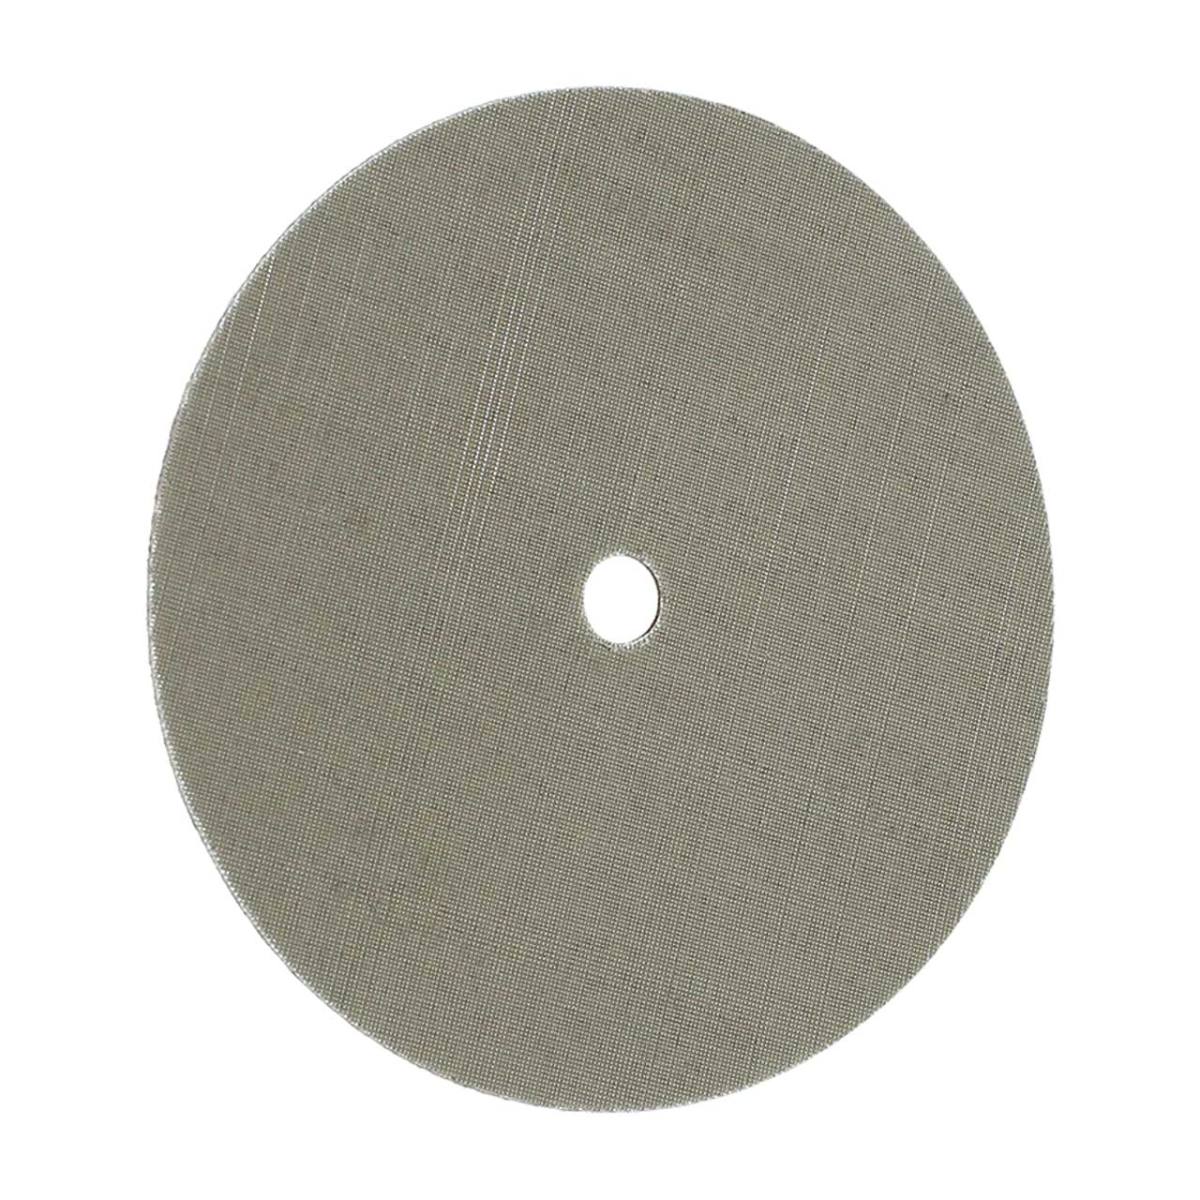 FIX KLETT Disco Trizact, 150 mm x 10 mm, grano 400 / A 45, cierre autoadherente